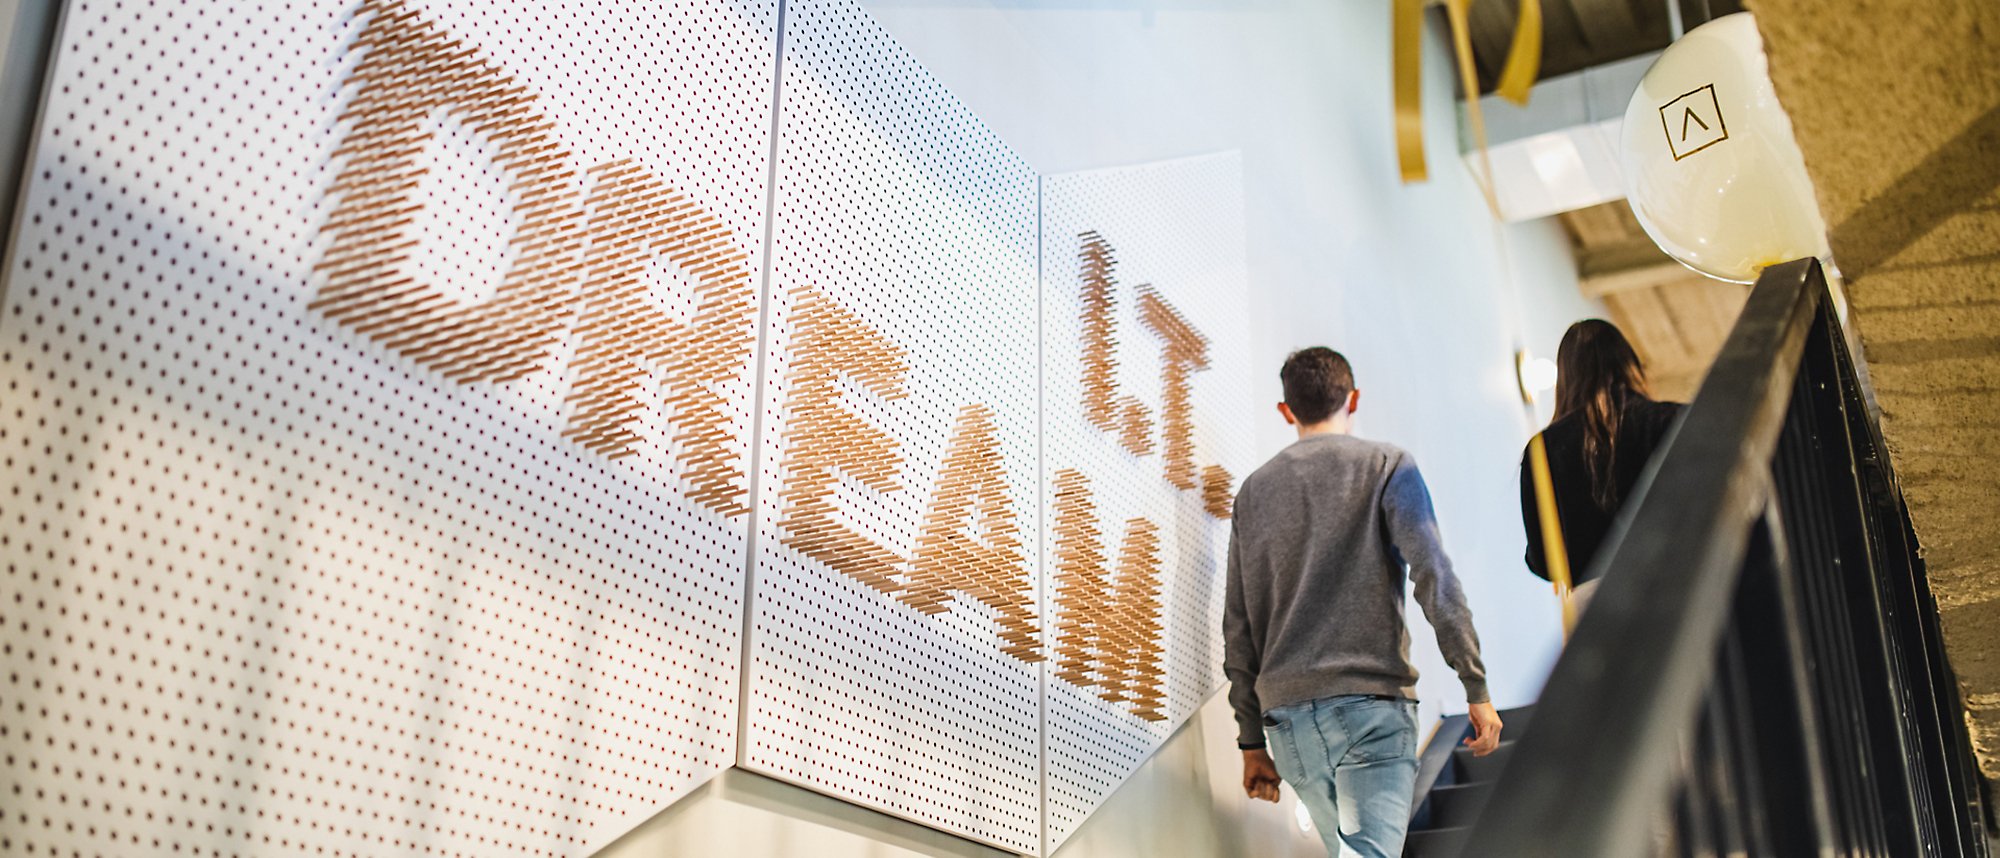 Dos personas subiendo las escaleras con una pancarta de IT dream en la pared